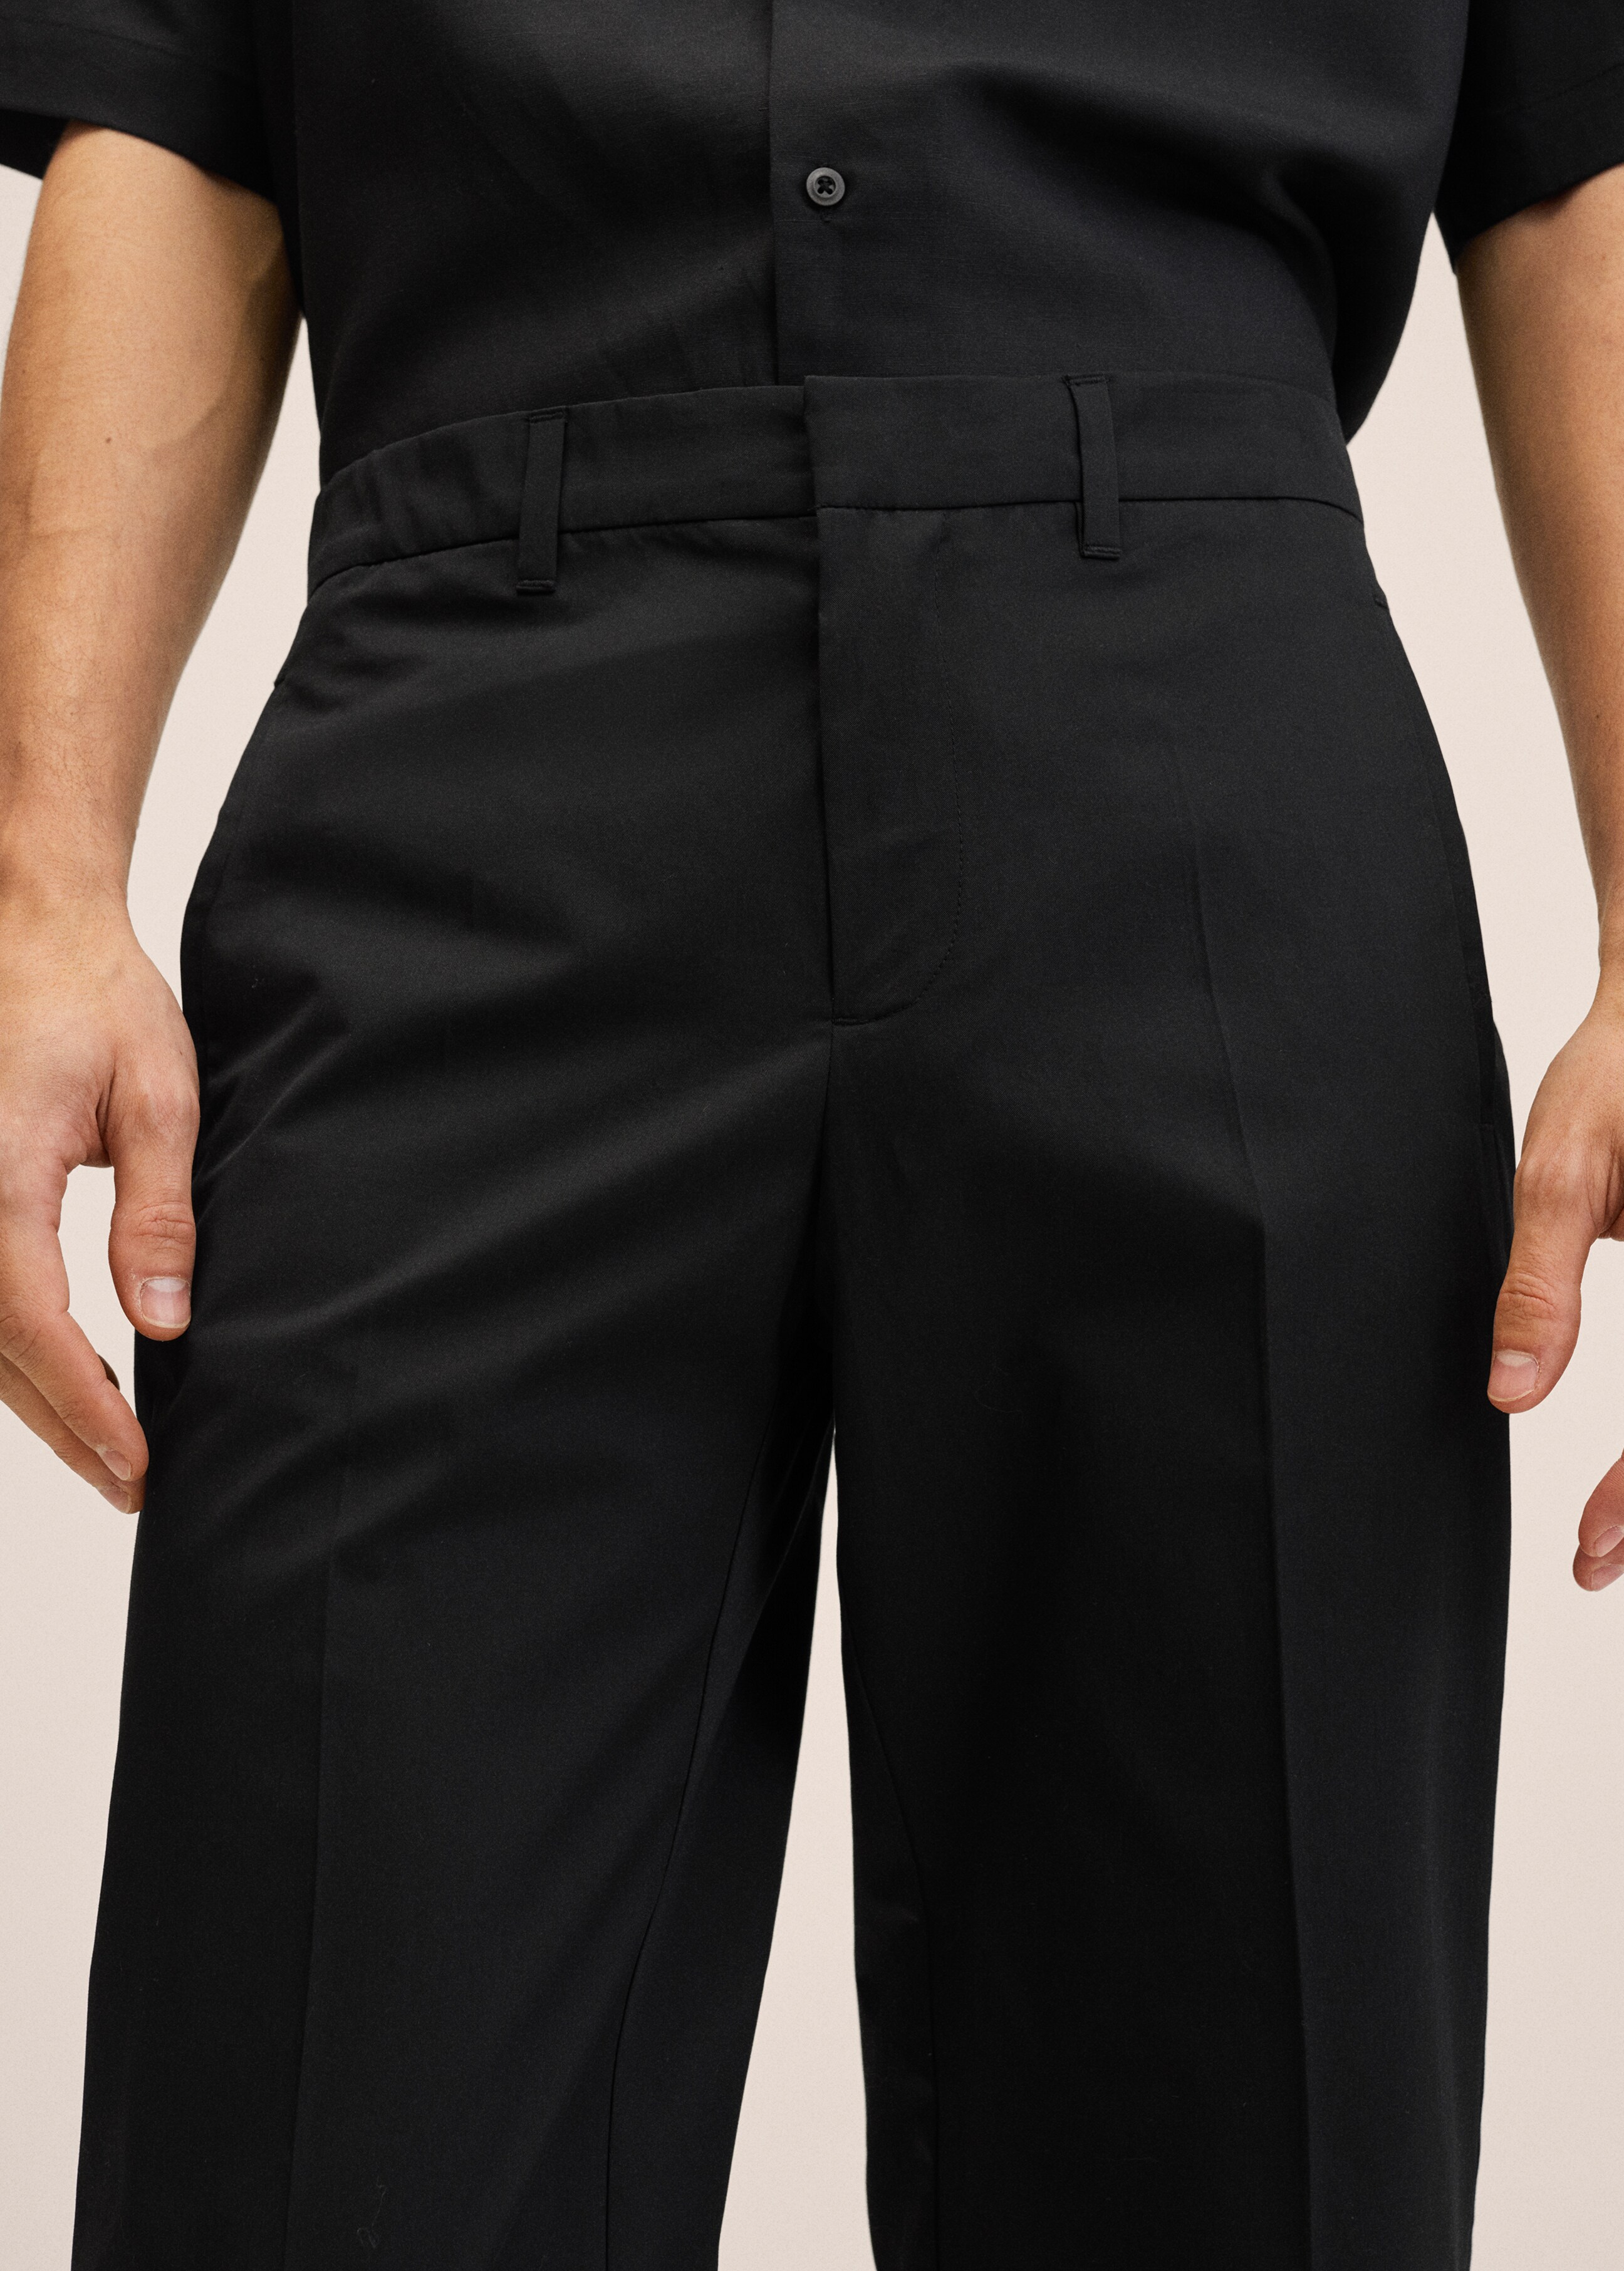 Pantalón slim fit algodón - Detalle del artículo 1